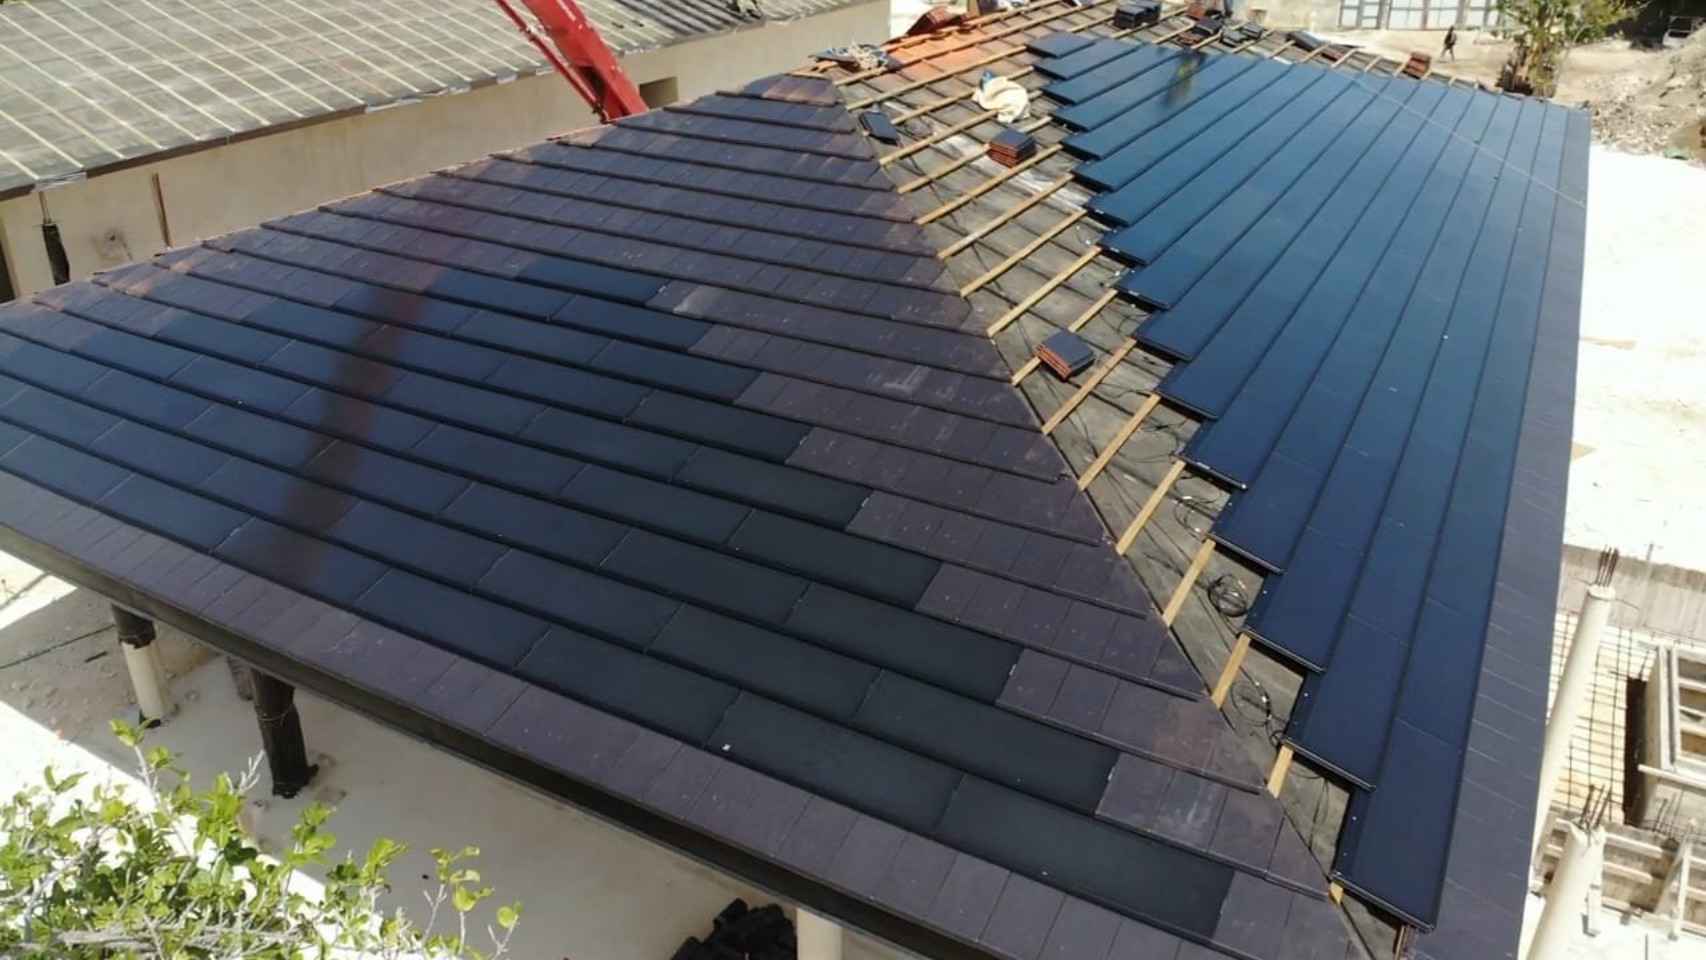 Las tejas solares en un tejado.